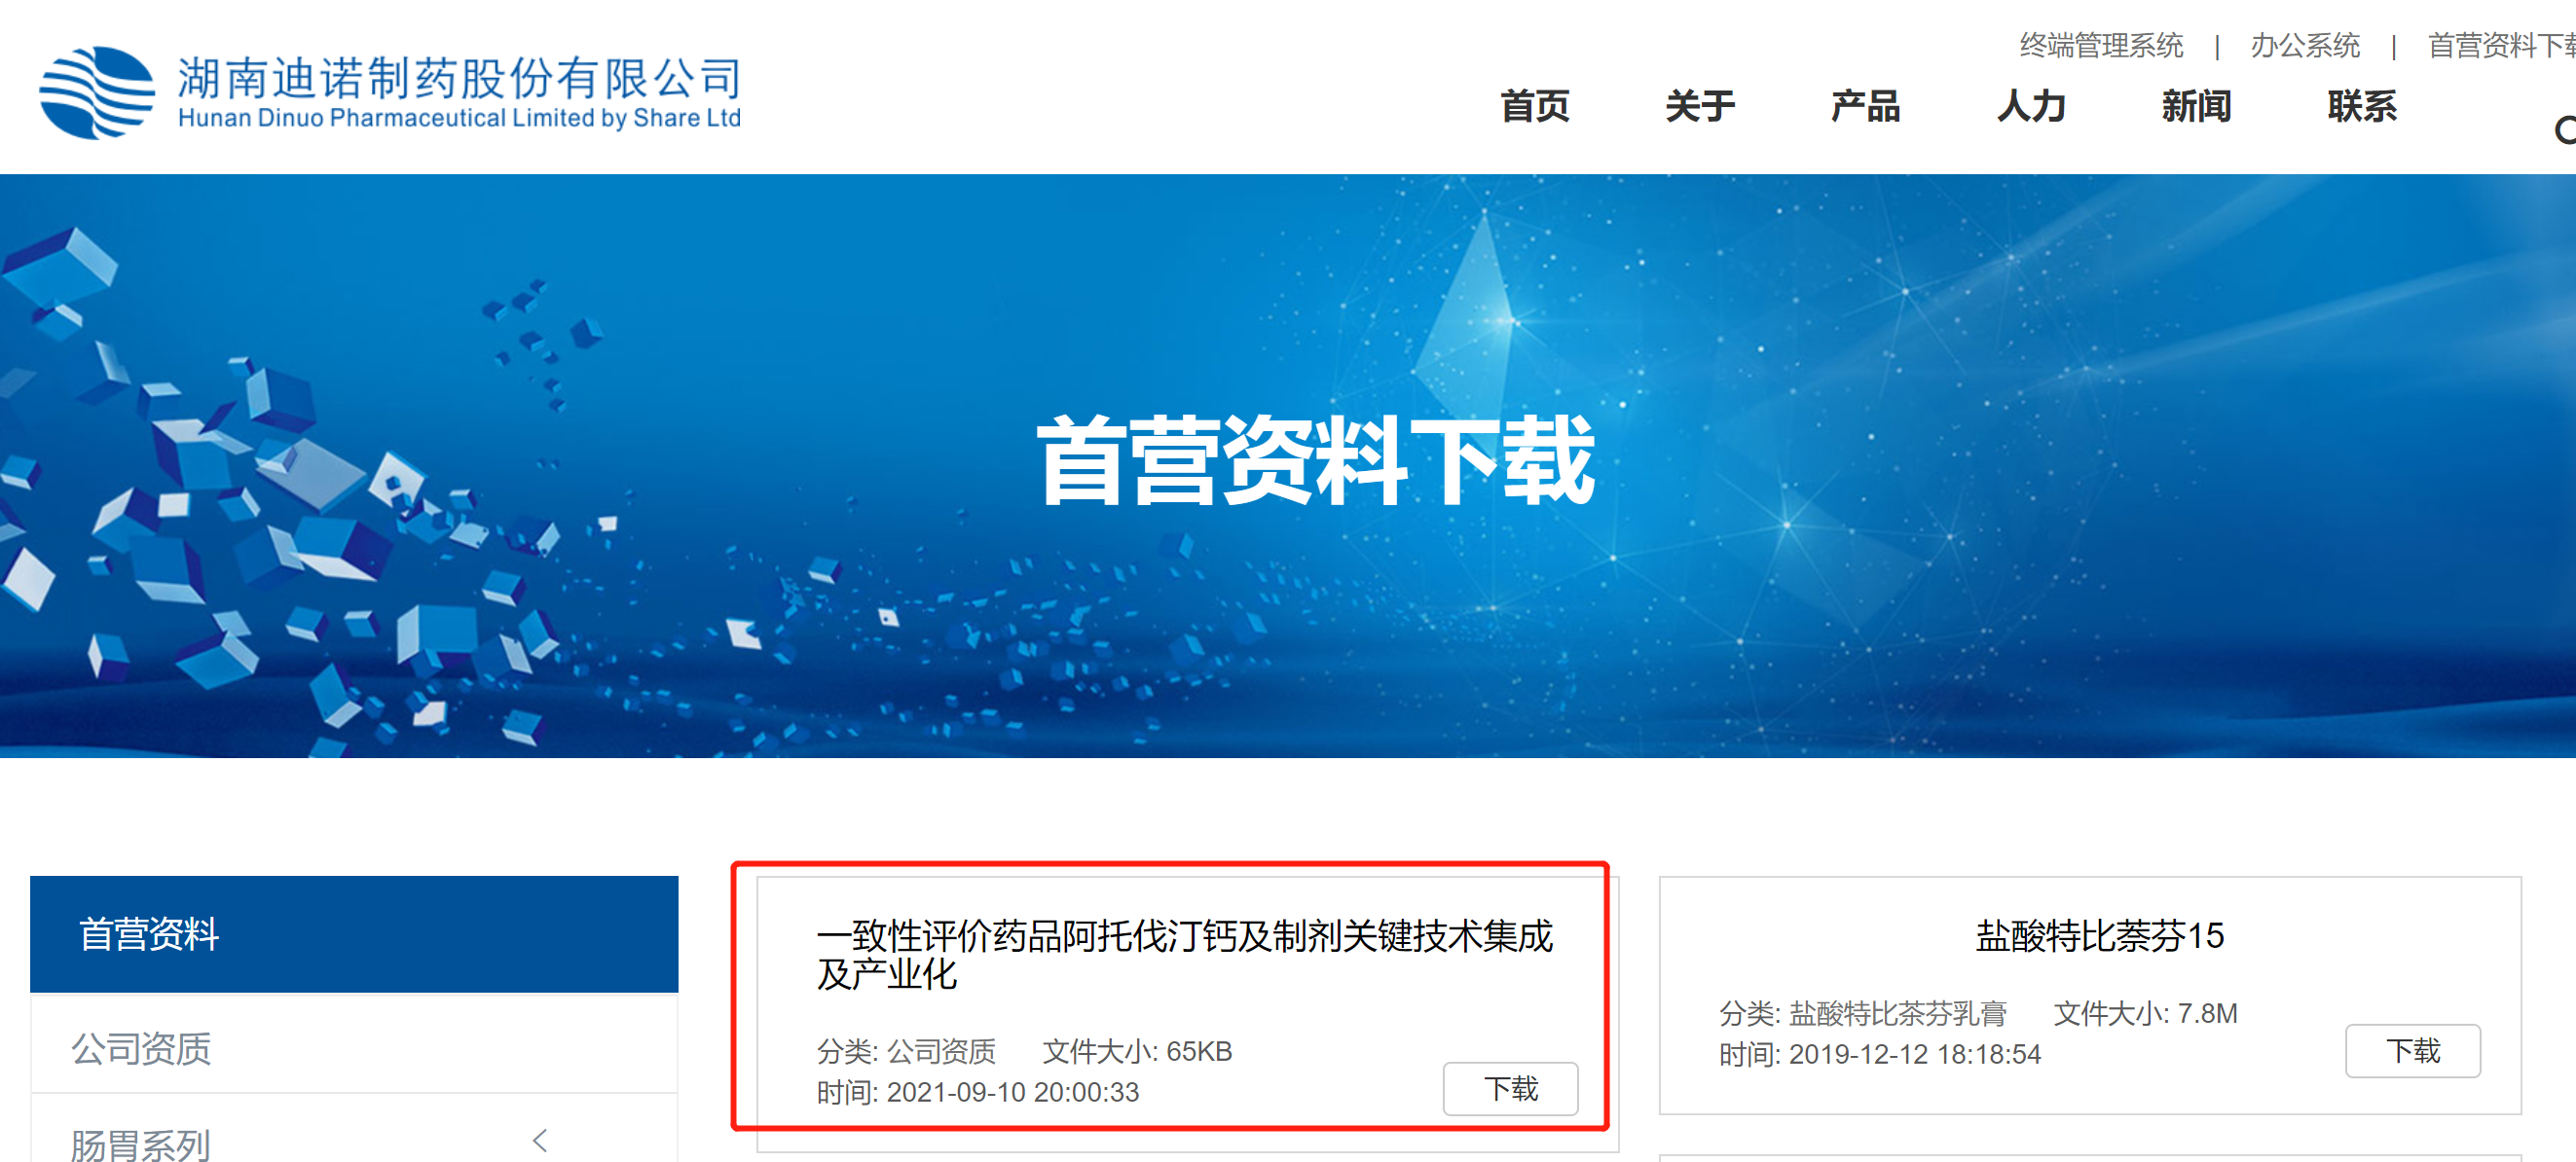 bet356唯一官网参与申报2021年度湖南省科技进步奖的公示